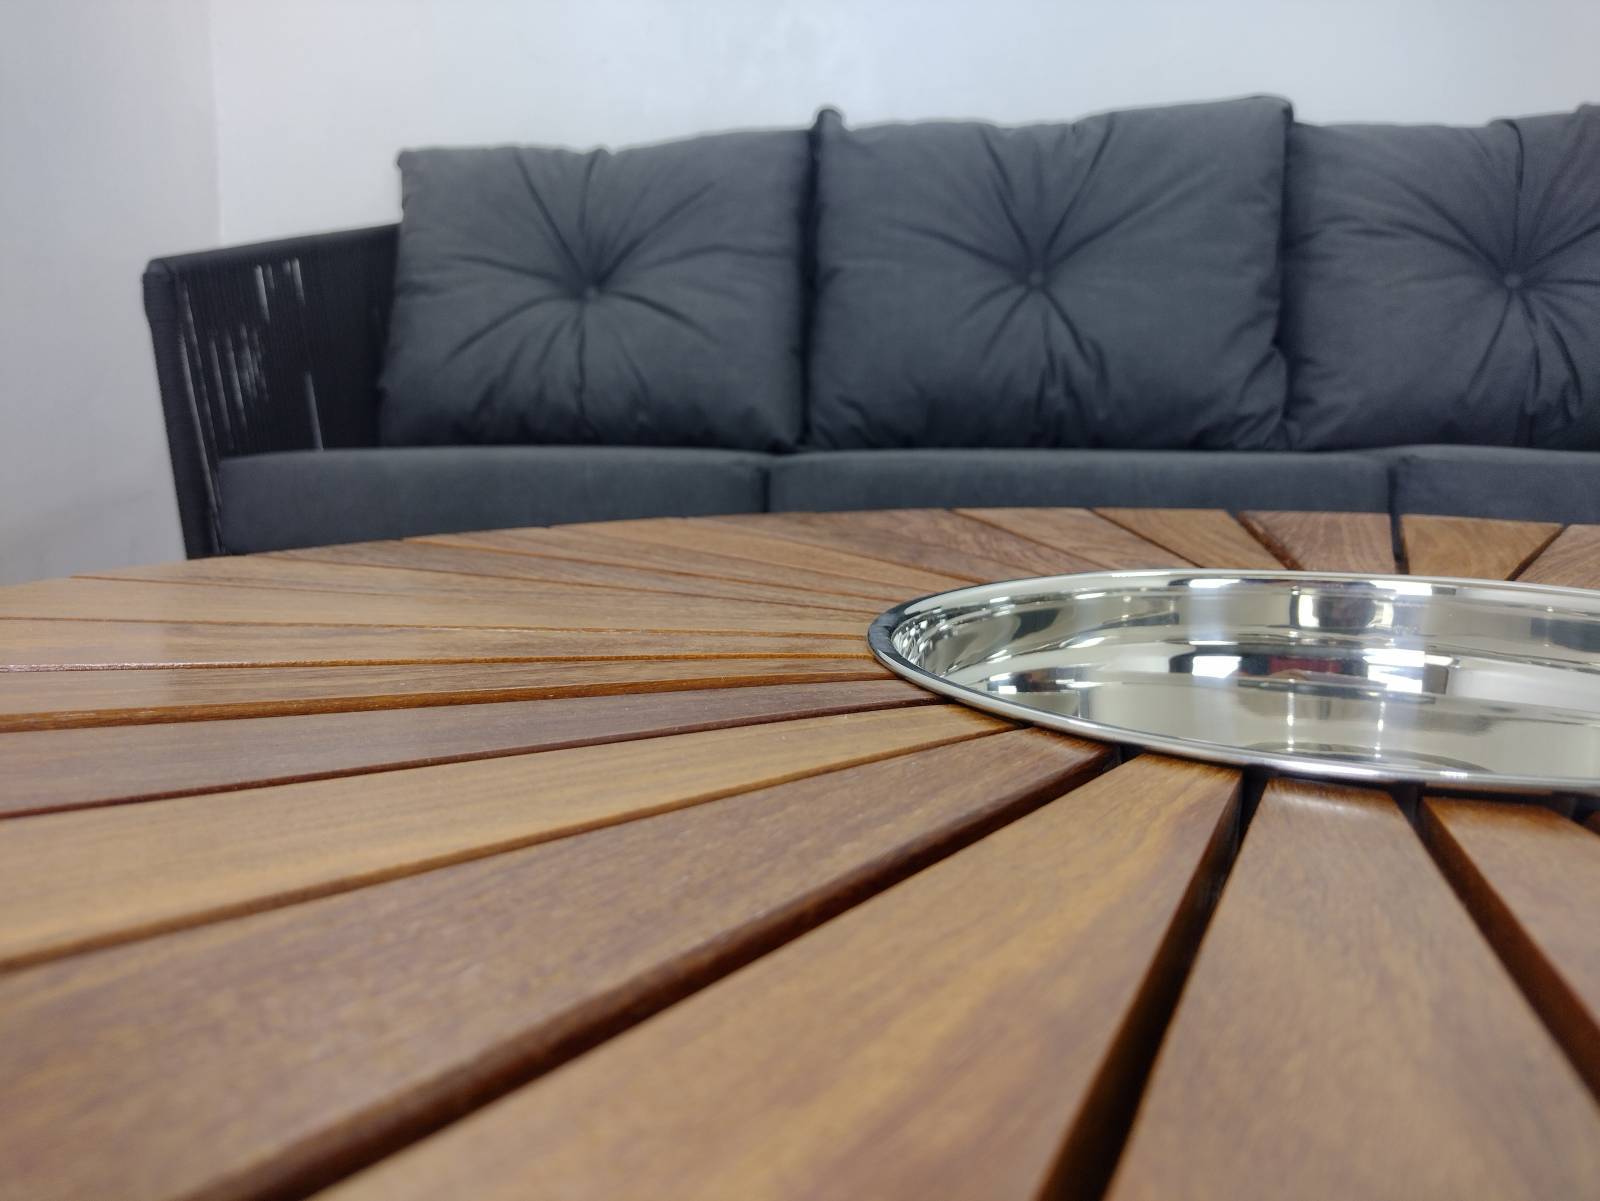 Conjunto de sofá Italia com champanheira - Deck & Decor